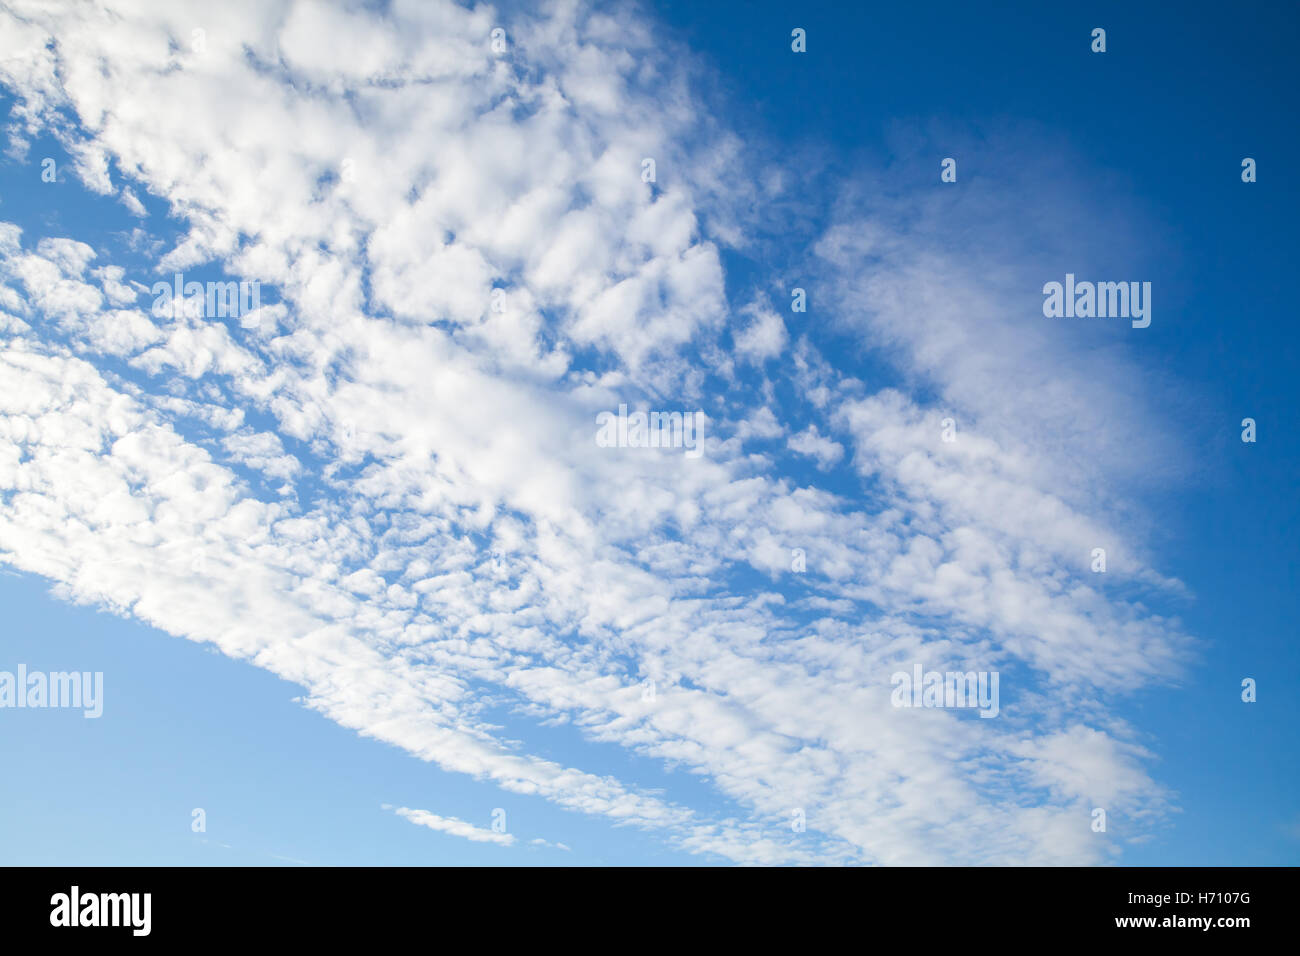 Natürlicher blauer Himmel mit weißen Altocumulus-Wolken bei tagsüber, Hintergrundtextur Foto Stockfoto